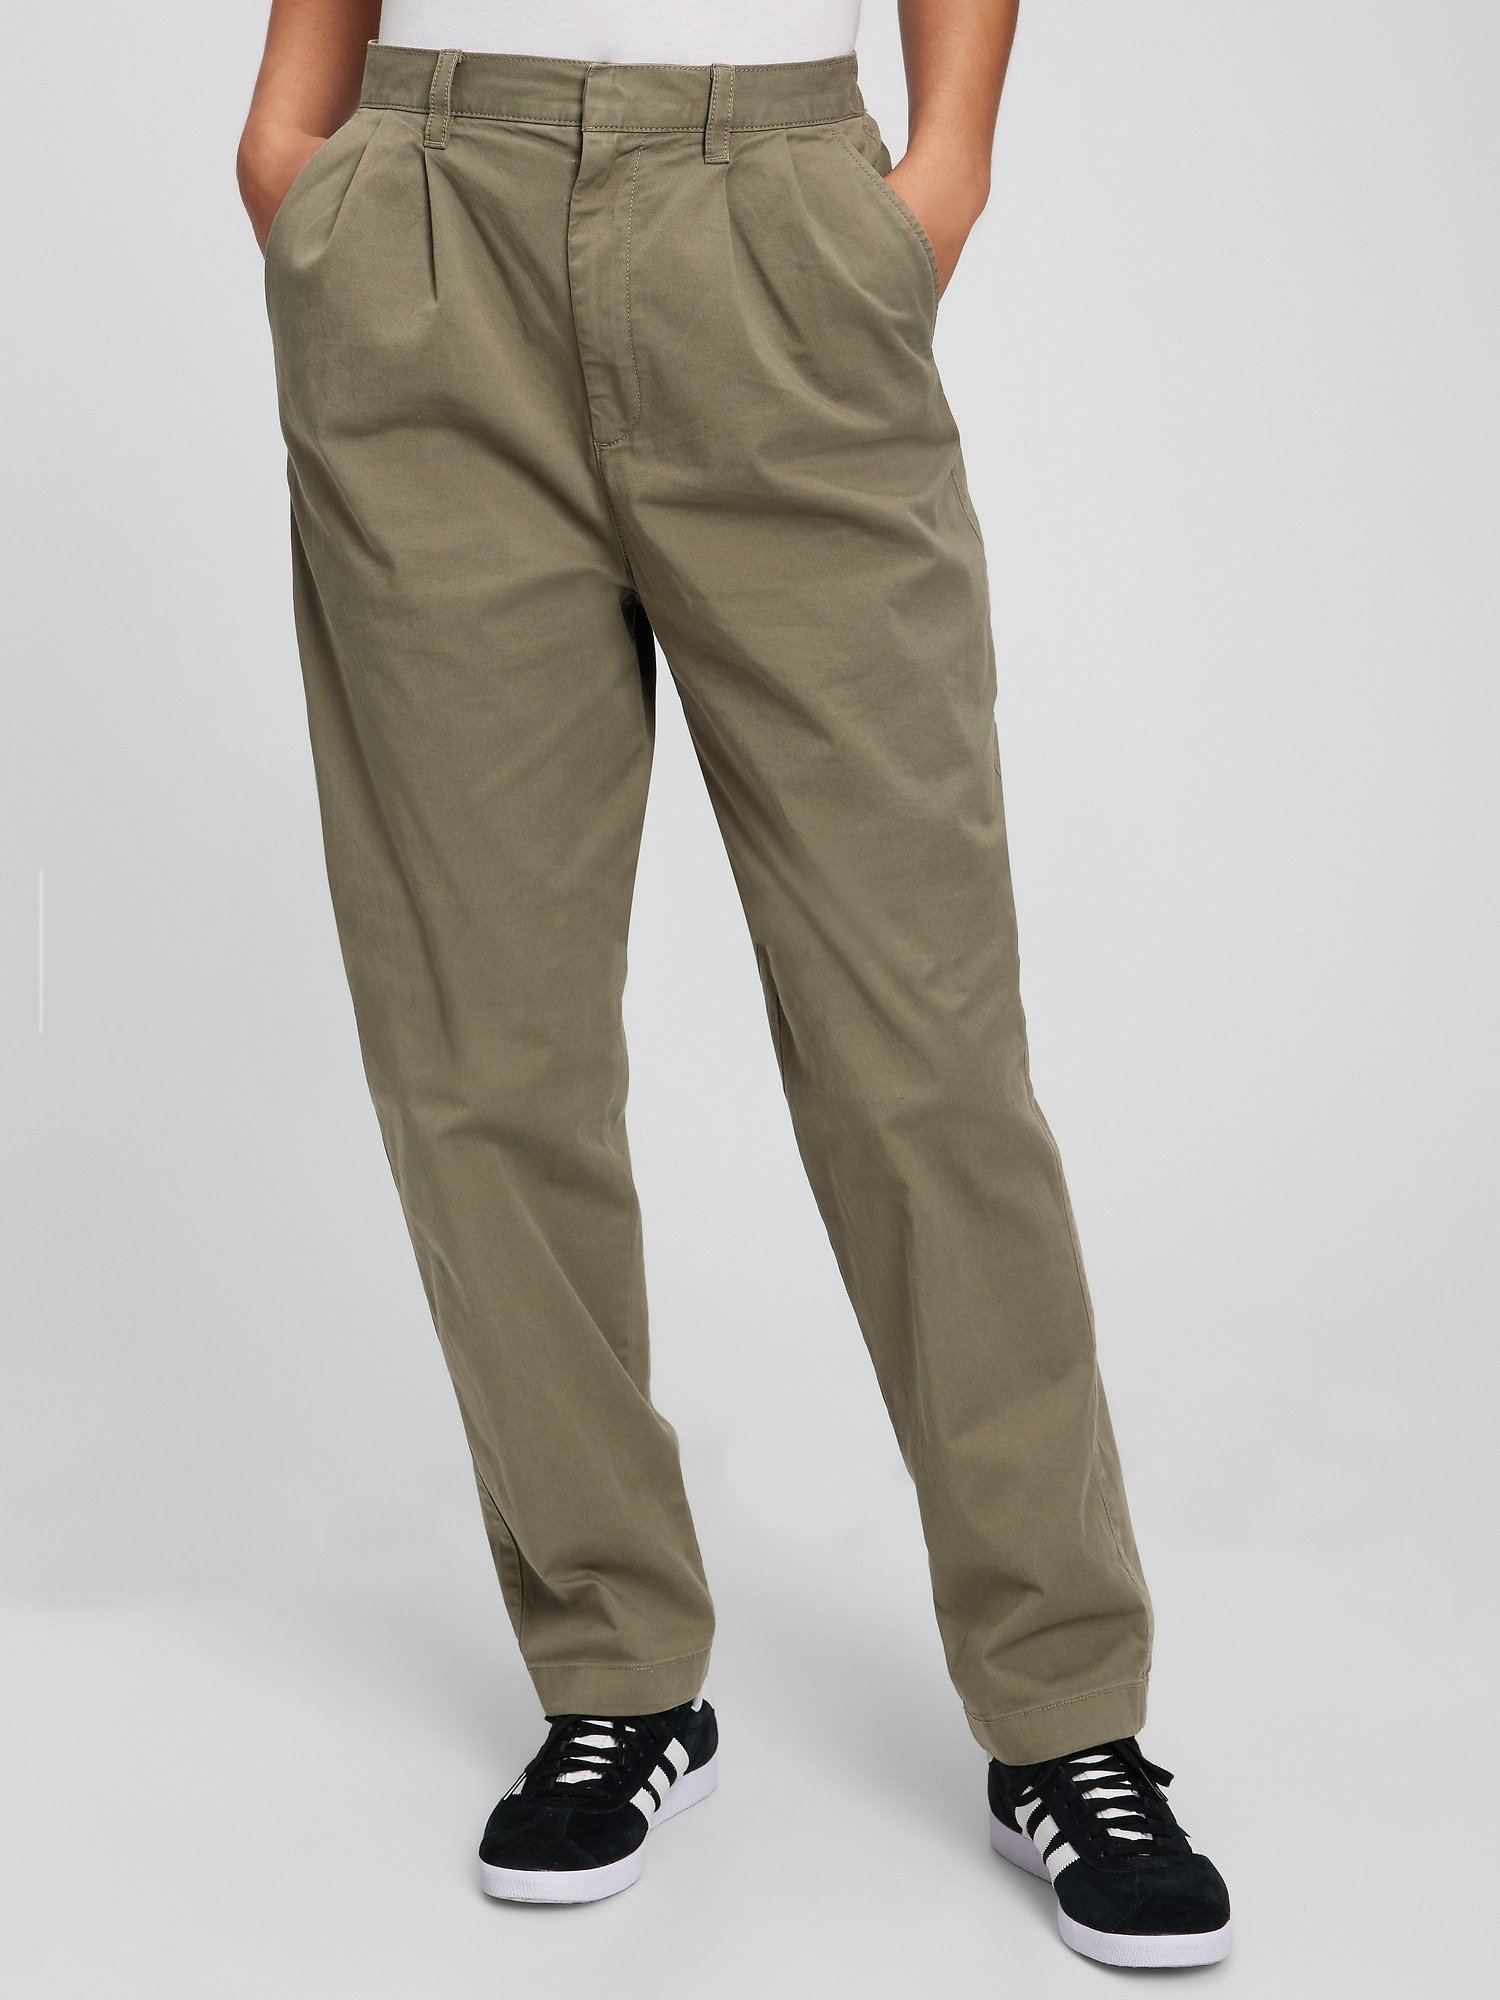 High Rise Pleated Washwell™ Khaki Pantolon product image